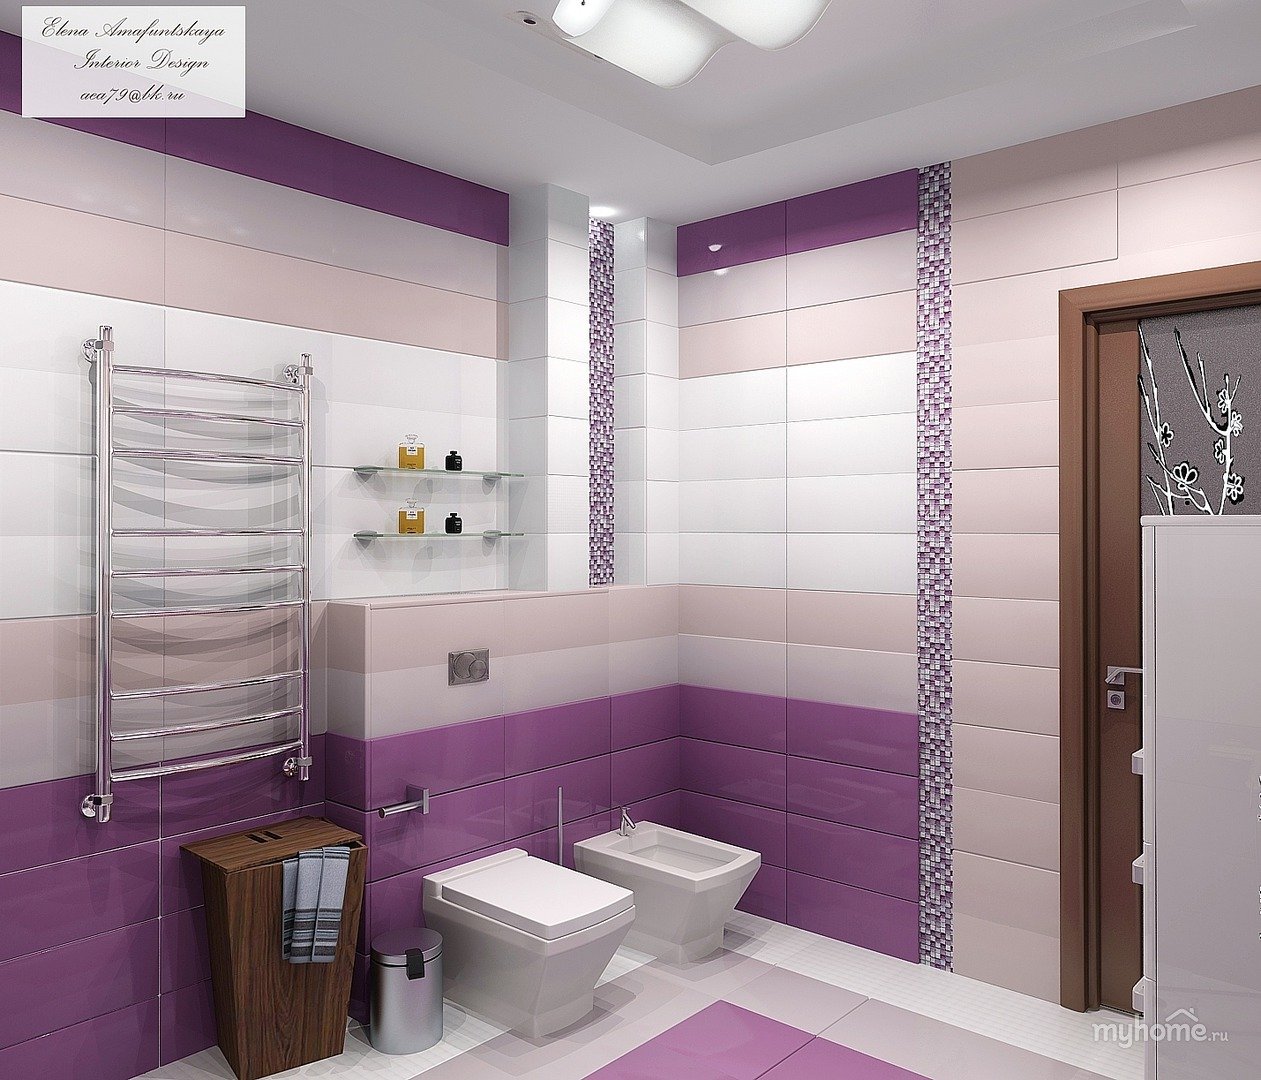 Фиолетовая ванна: комната в сиреневом цвете, фото и дизайн в фиолетовых тонах, мебель с белым и темная плитка
фиолетовая ванная: 6 стилей, 6 решений – дизайн интерьера и ремонт квартиры своими руками